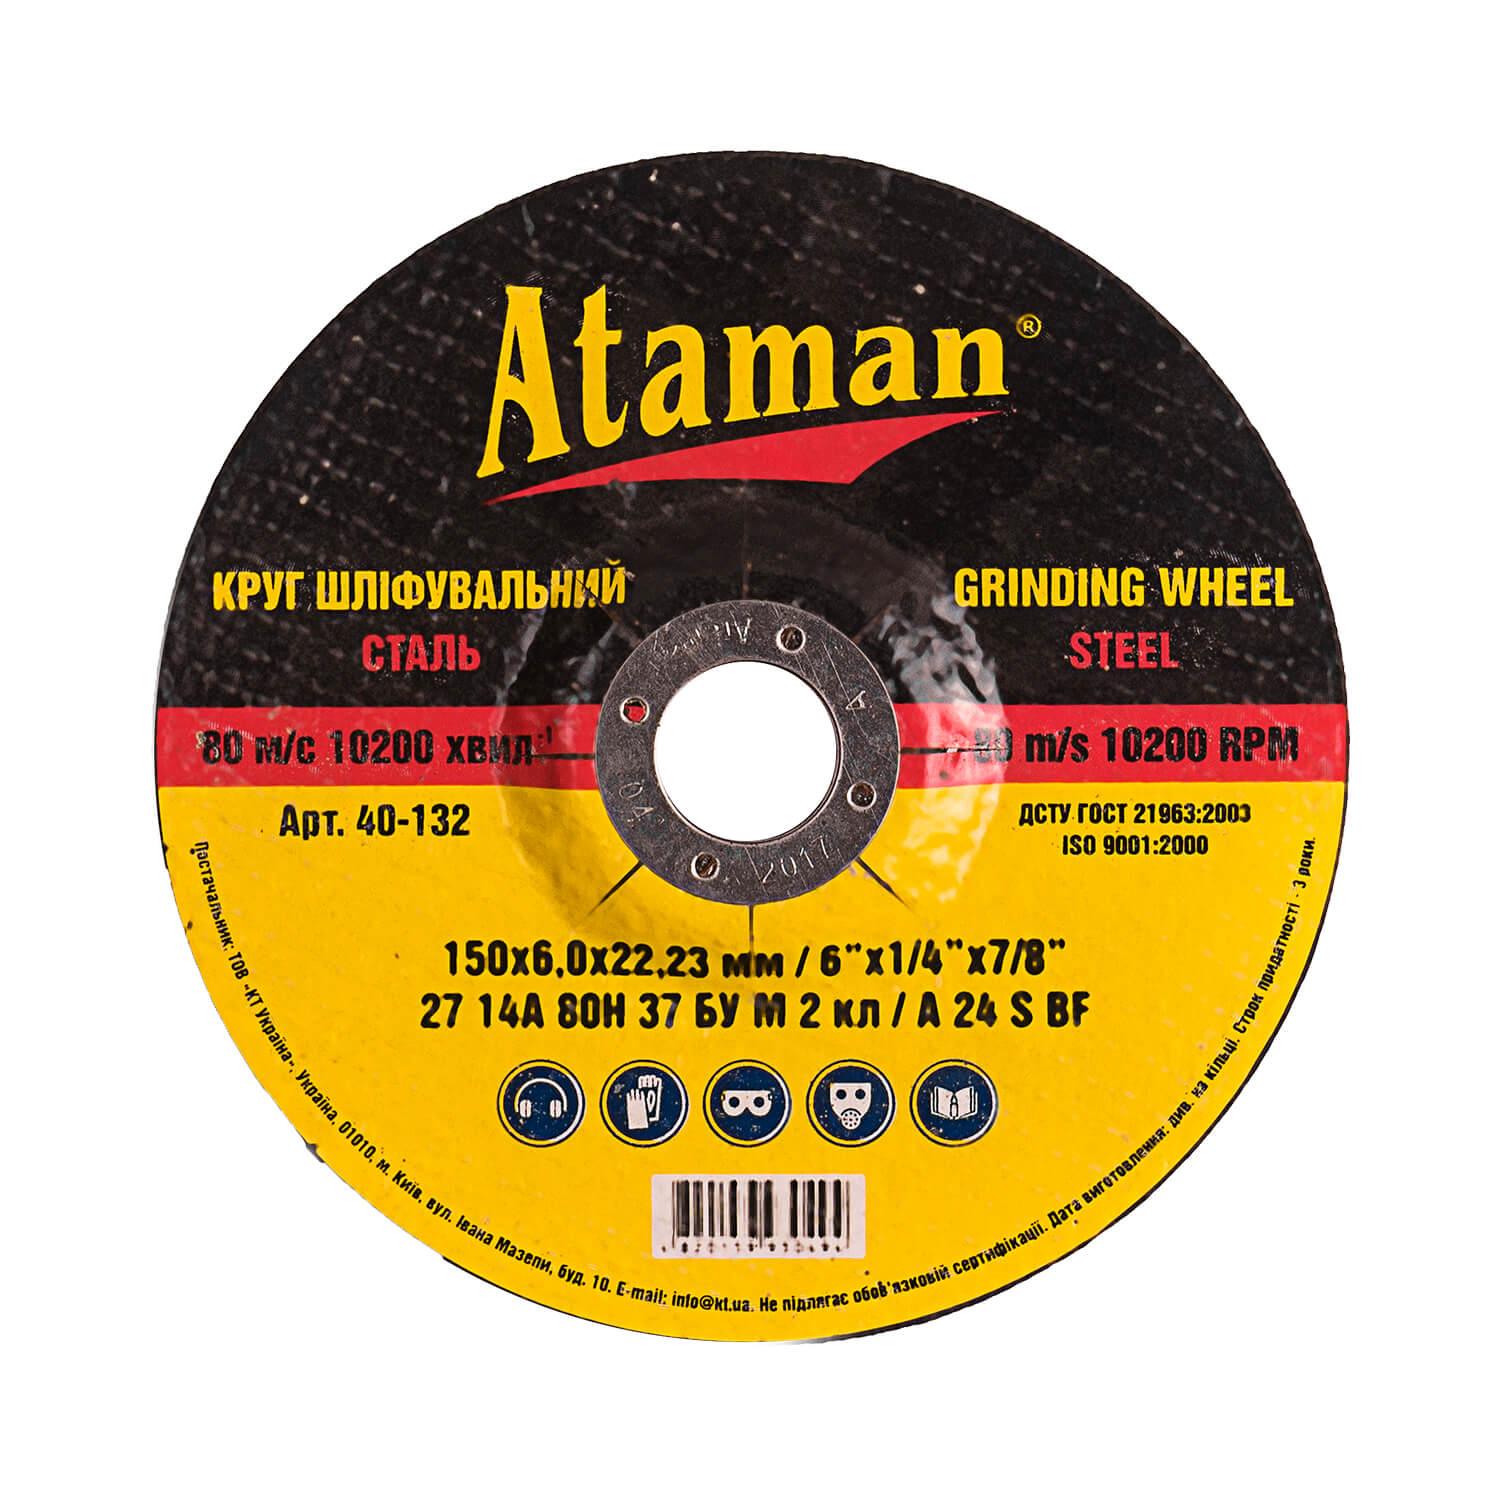 Grinding wheel for metal Ataman 27 14А 150х6.0х22.23